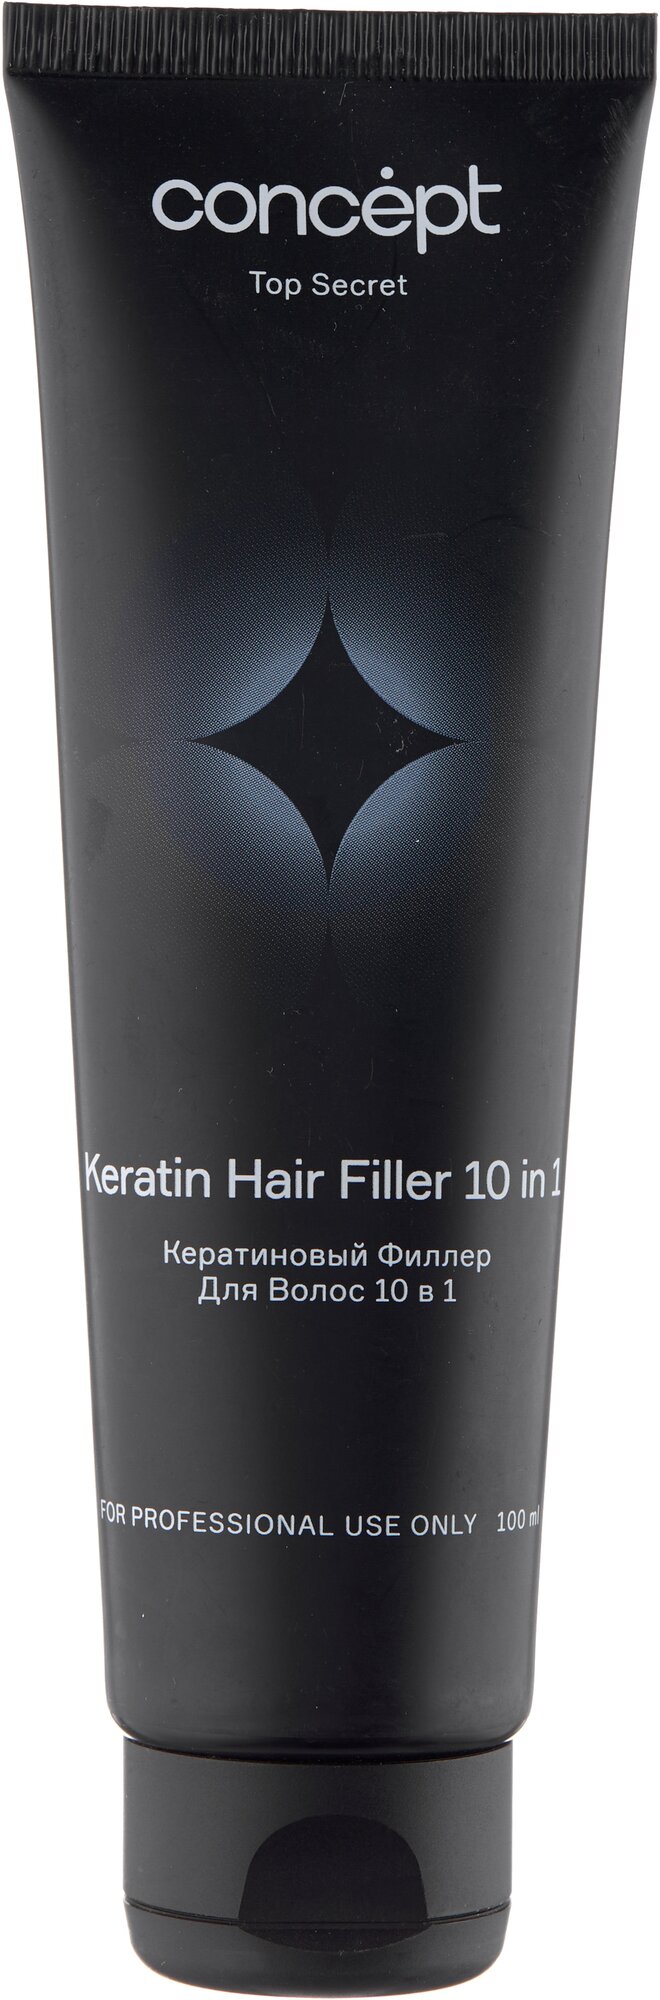 Кератиновый филлер для волос 10 в 1 (keratin hair filler 10 in 1) 2021, 100 мл